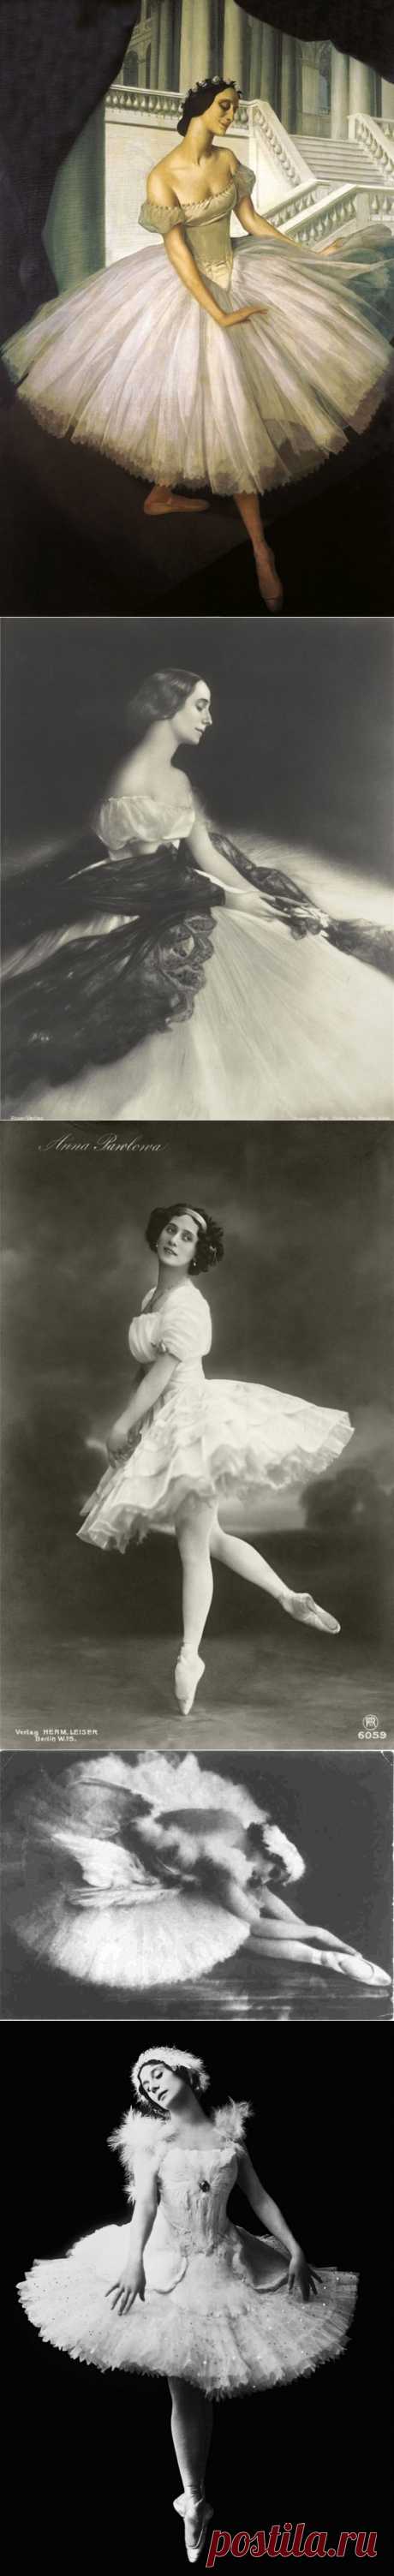 Великая Анна Павлова (1881-1931)... Красота не терпит делитанства. (3 видео)